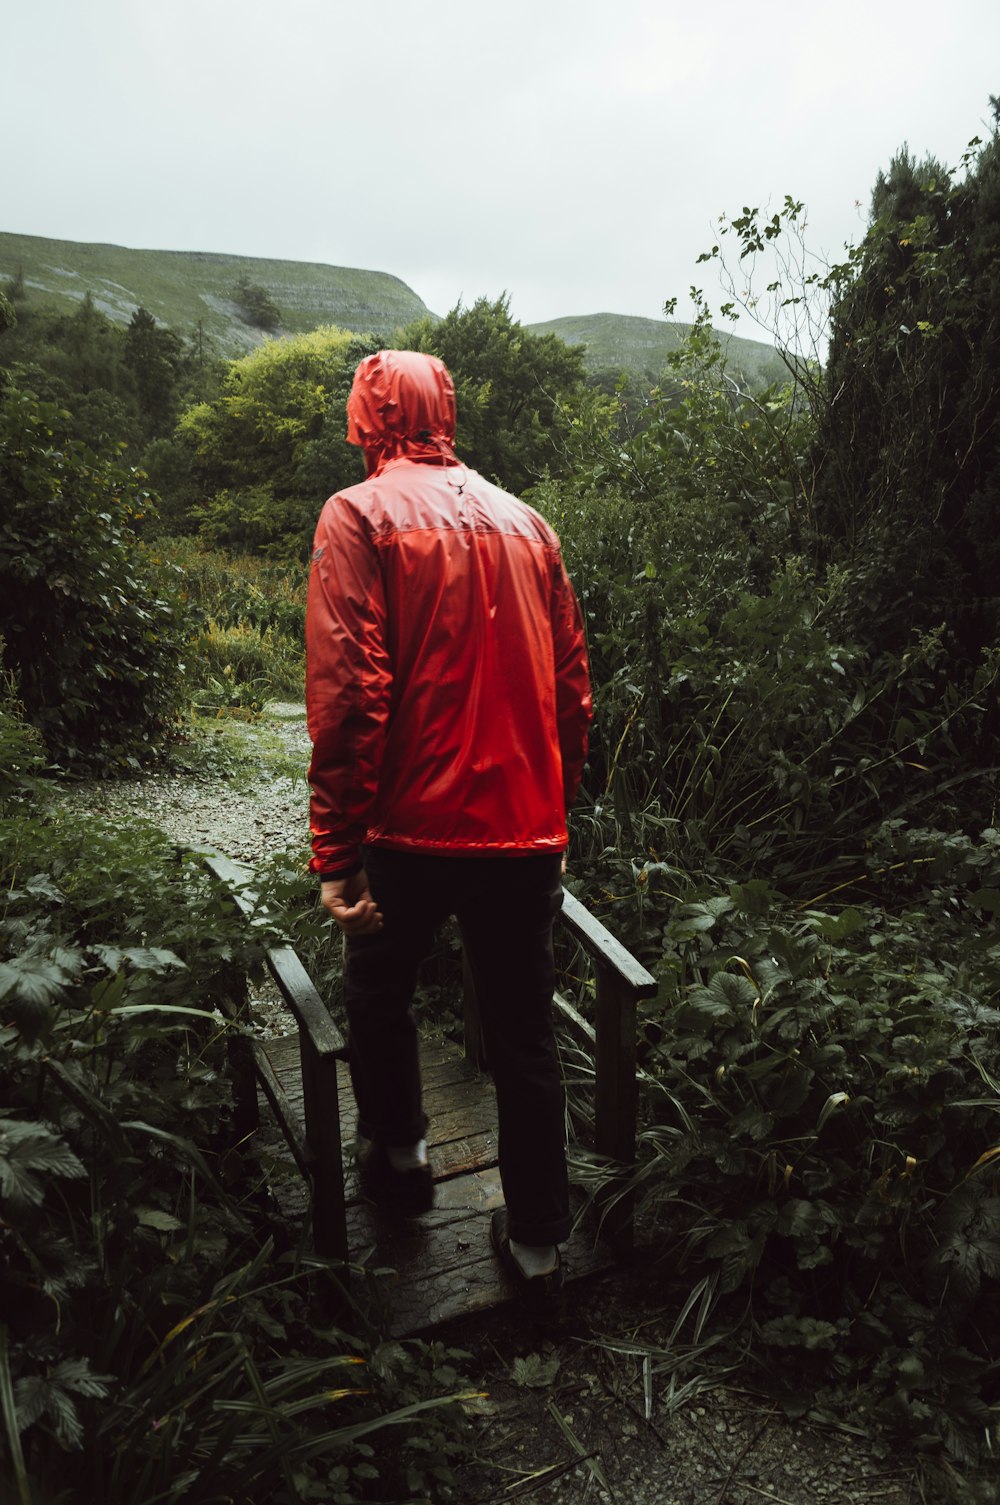 빨간 재킷을 입은 남자가 나무 산책로를 걷고 있다